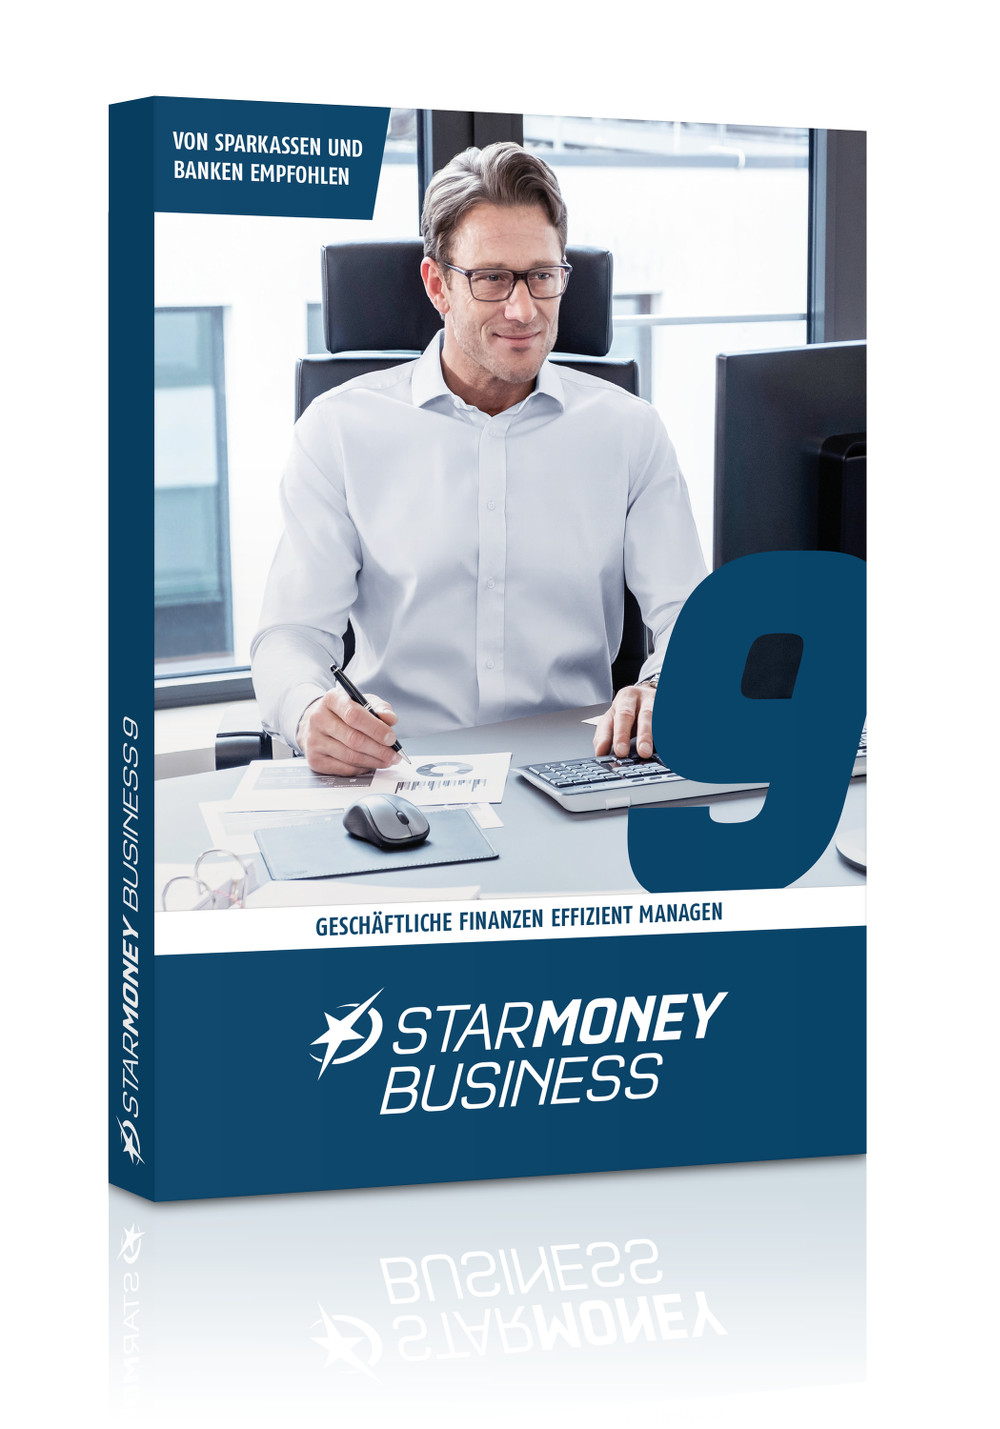 StarMoney Business 9: Eine Software – voller Überblick über die Unternehmensfinanzen 7